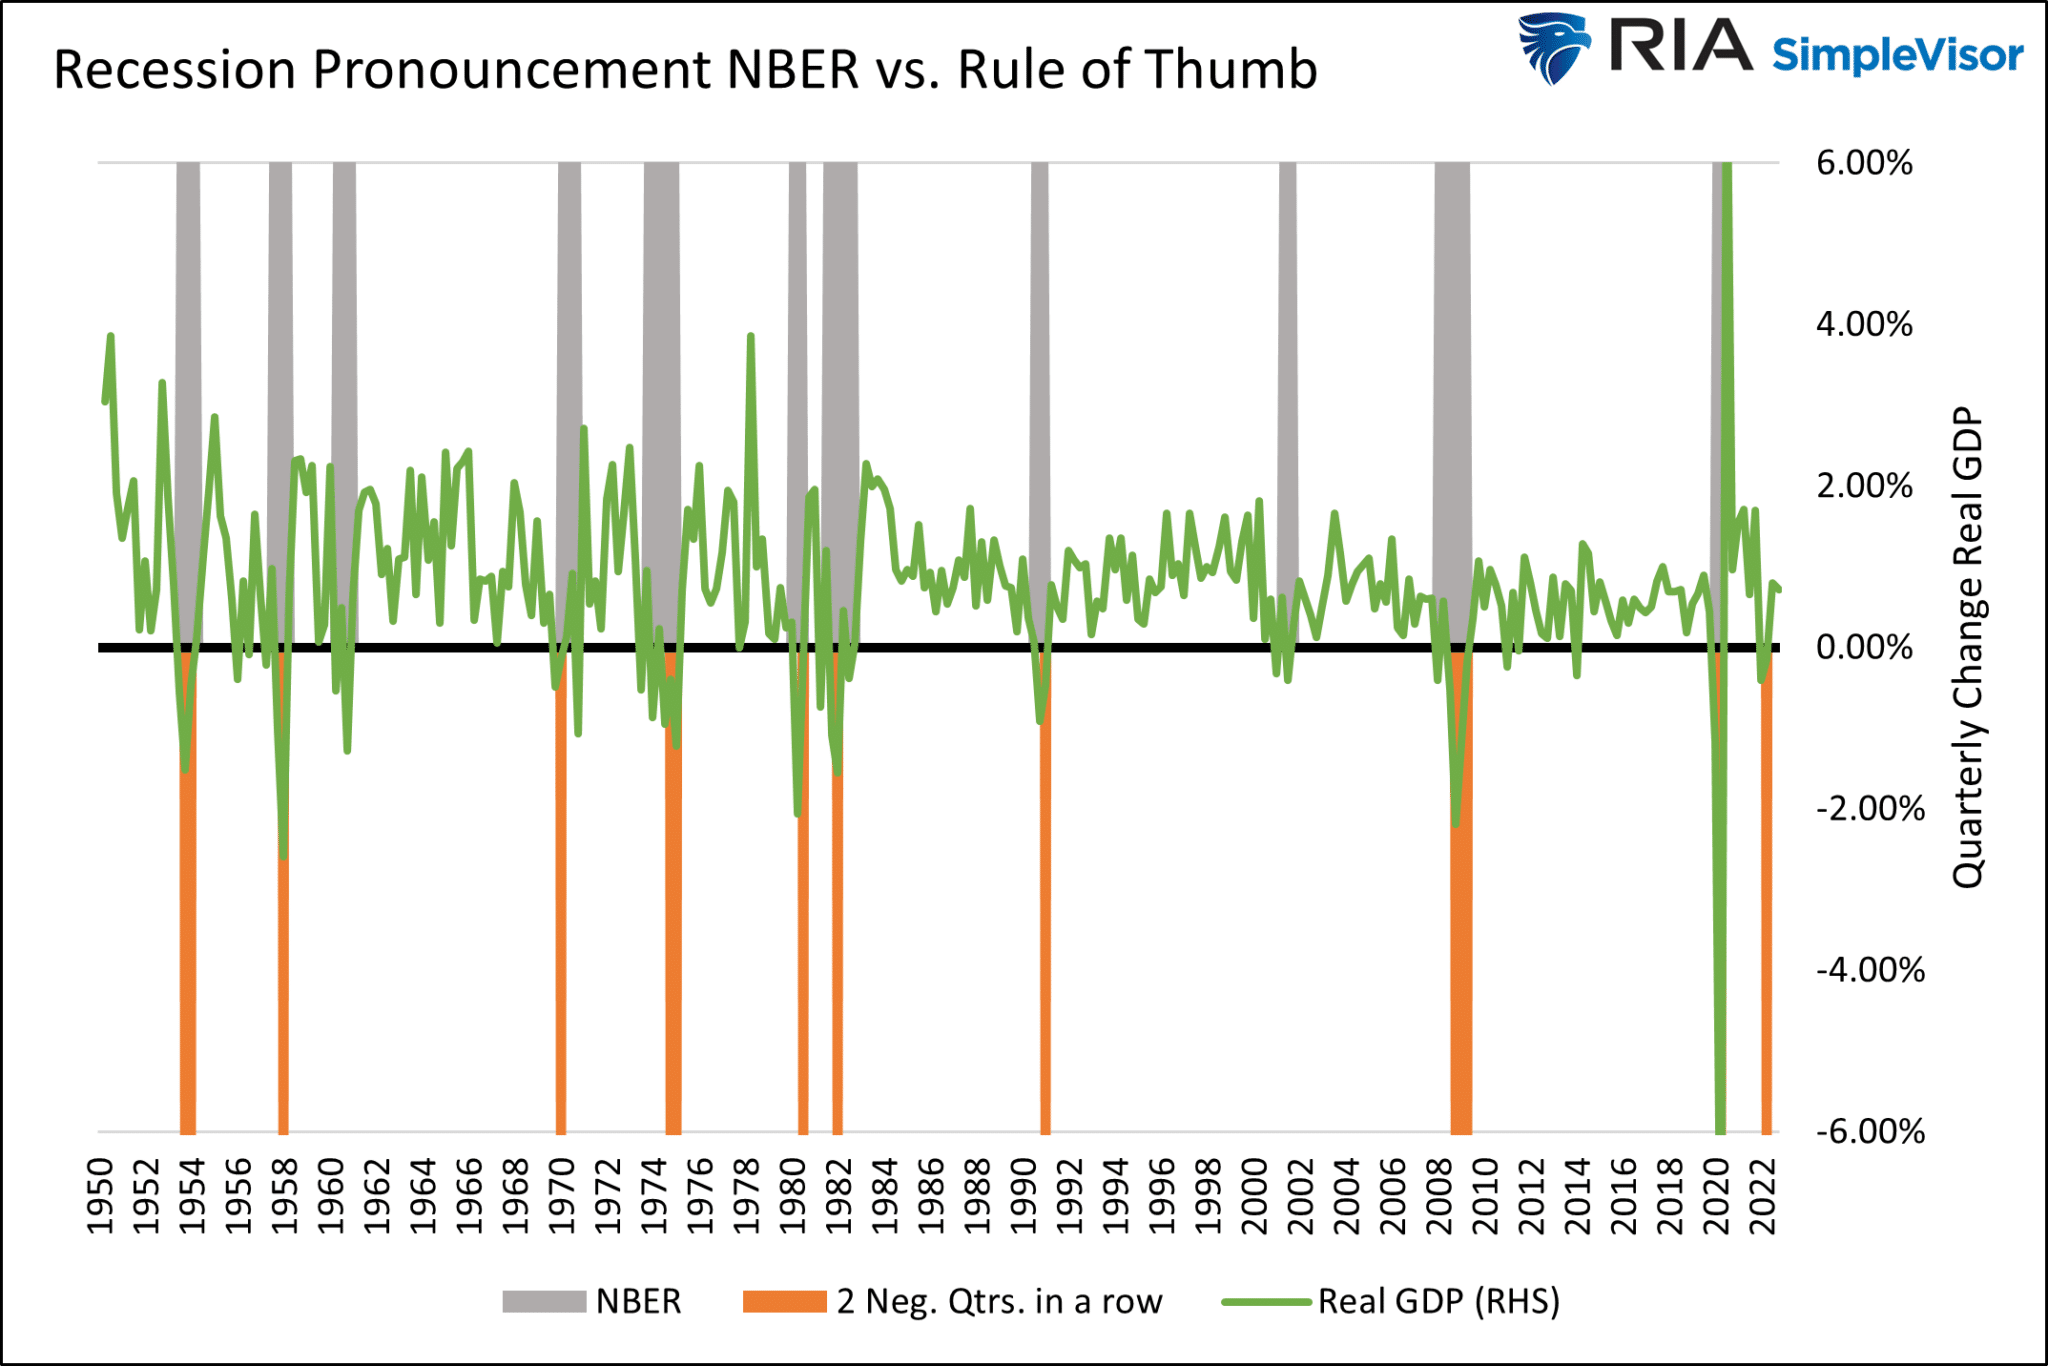 Recessions: NBER vs Rule of Thumb